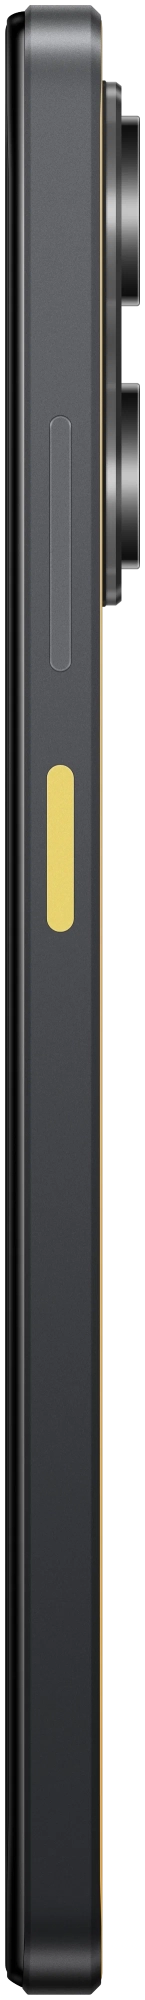 Смартфон Xiaomi POCO X5 Pro 5G 8/256 ГБ Желтый в Челябинске купить по недорогим ценам с доставкой